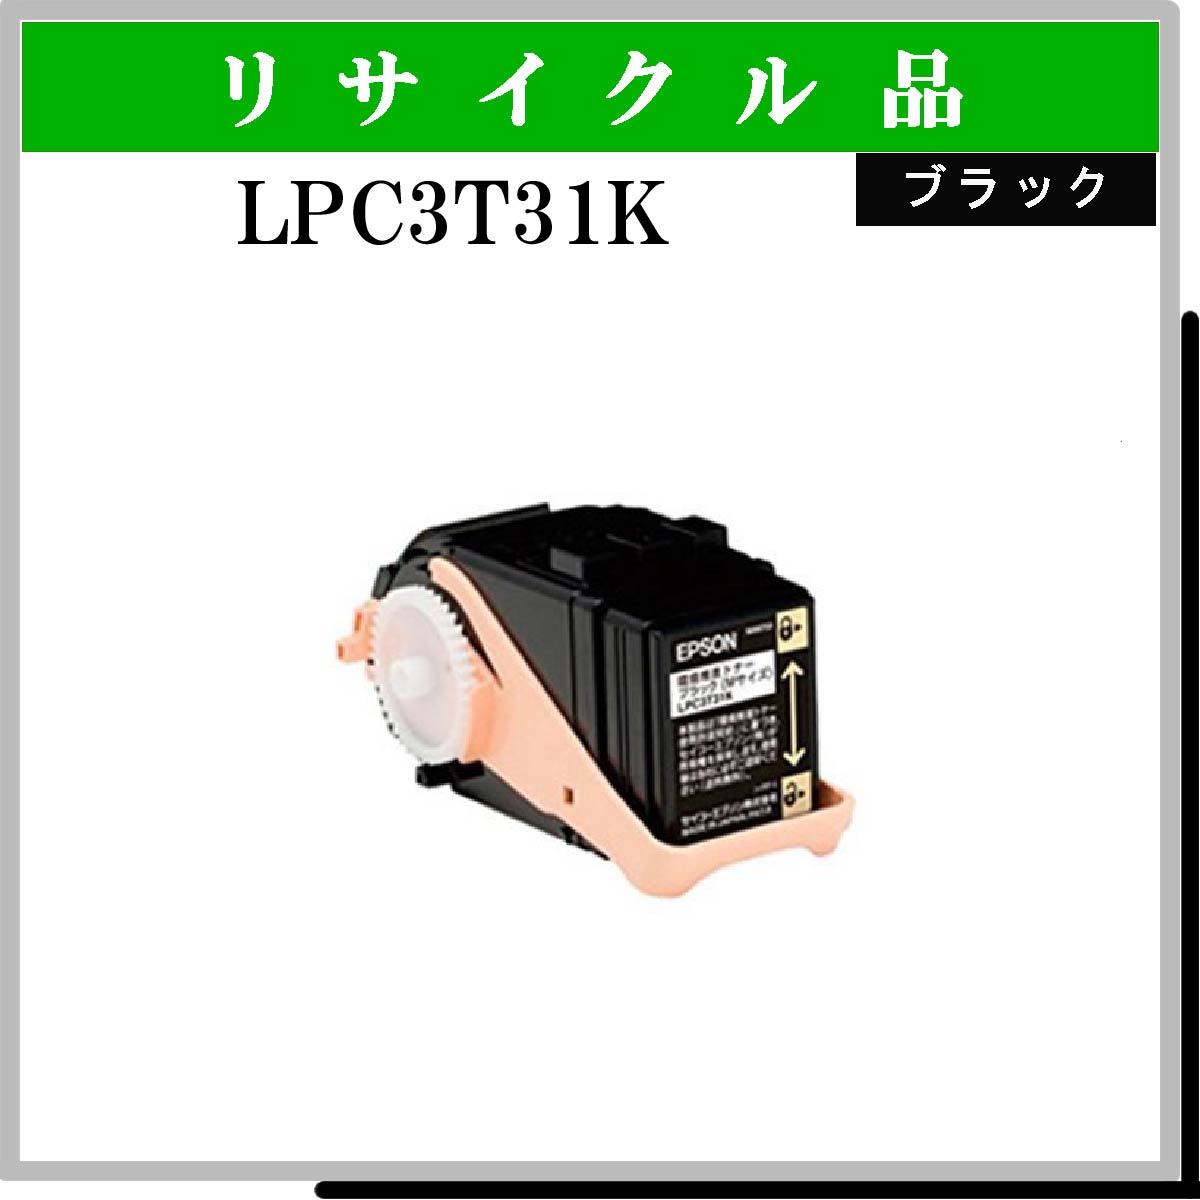 LPC3T31K - ウインドウを閉じる